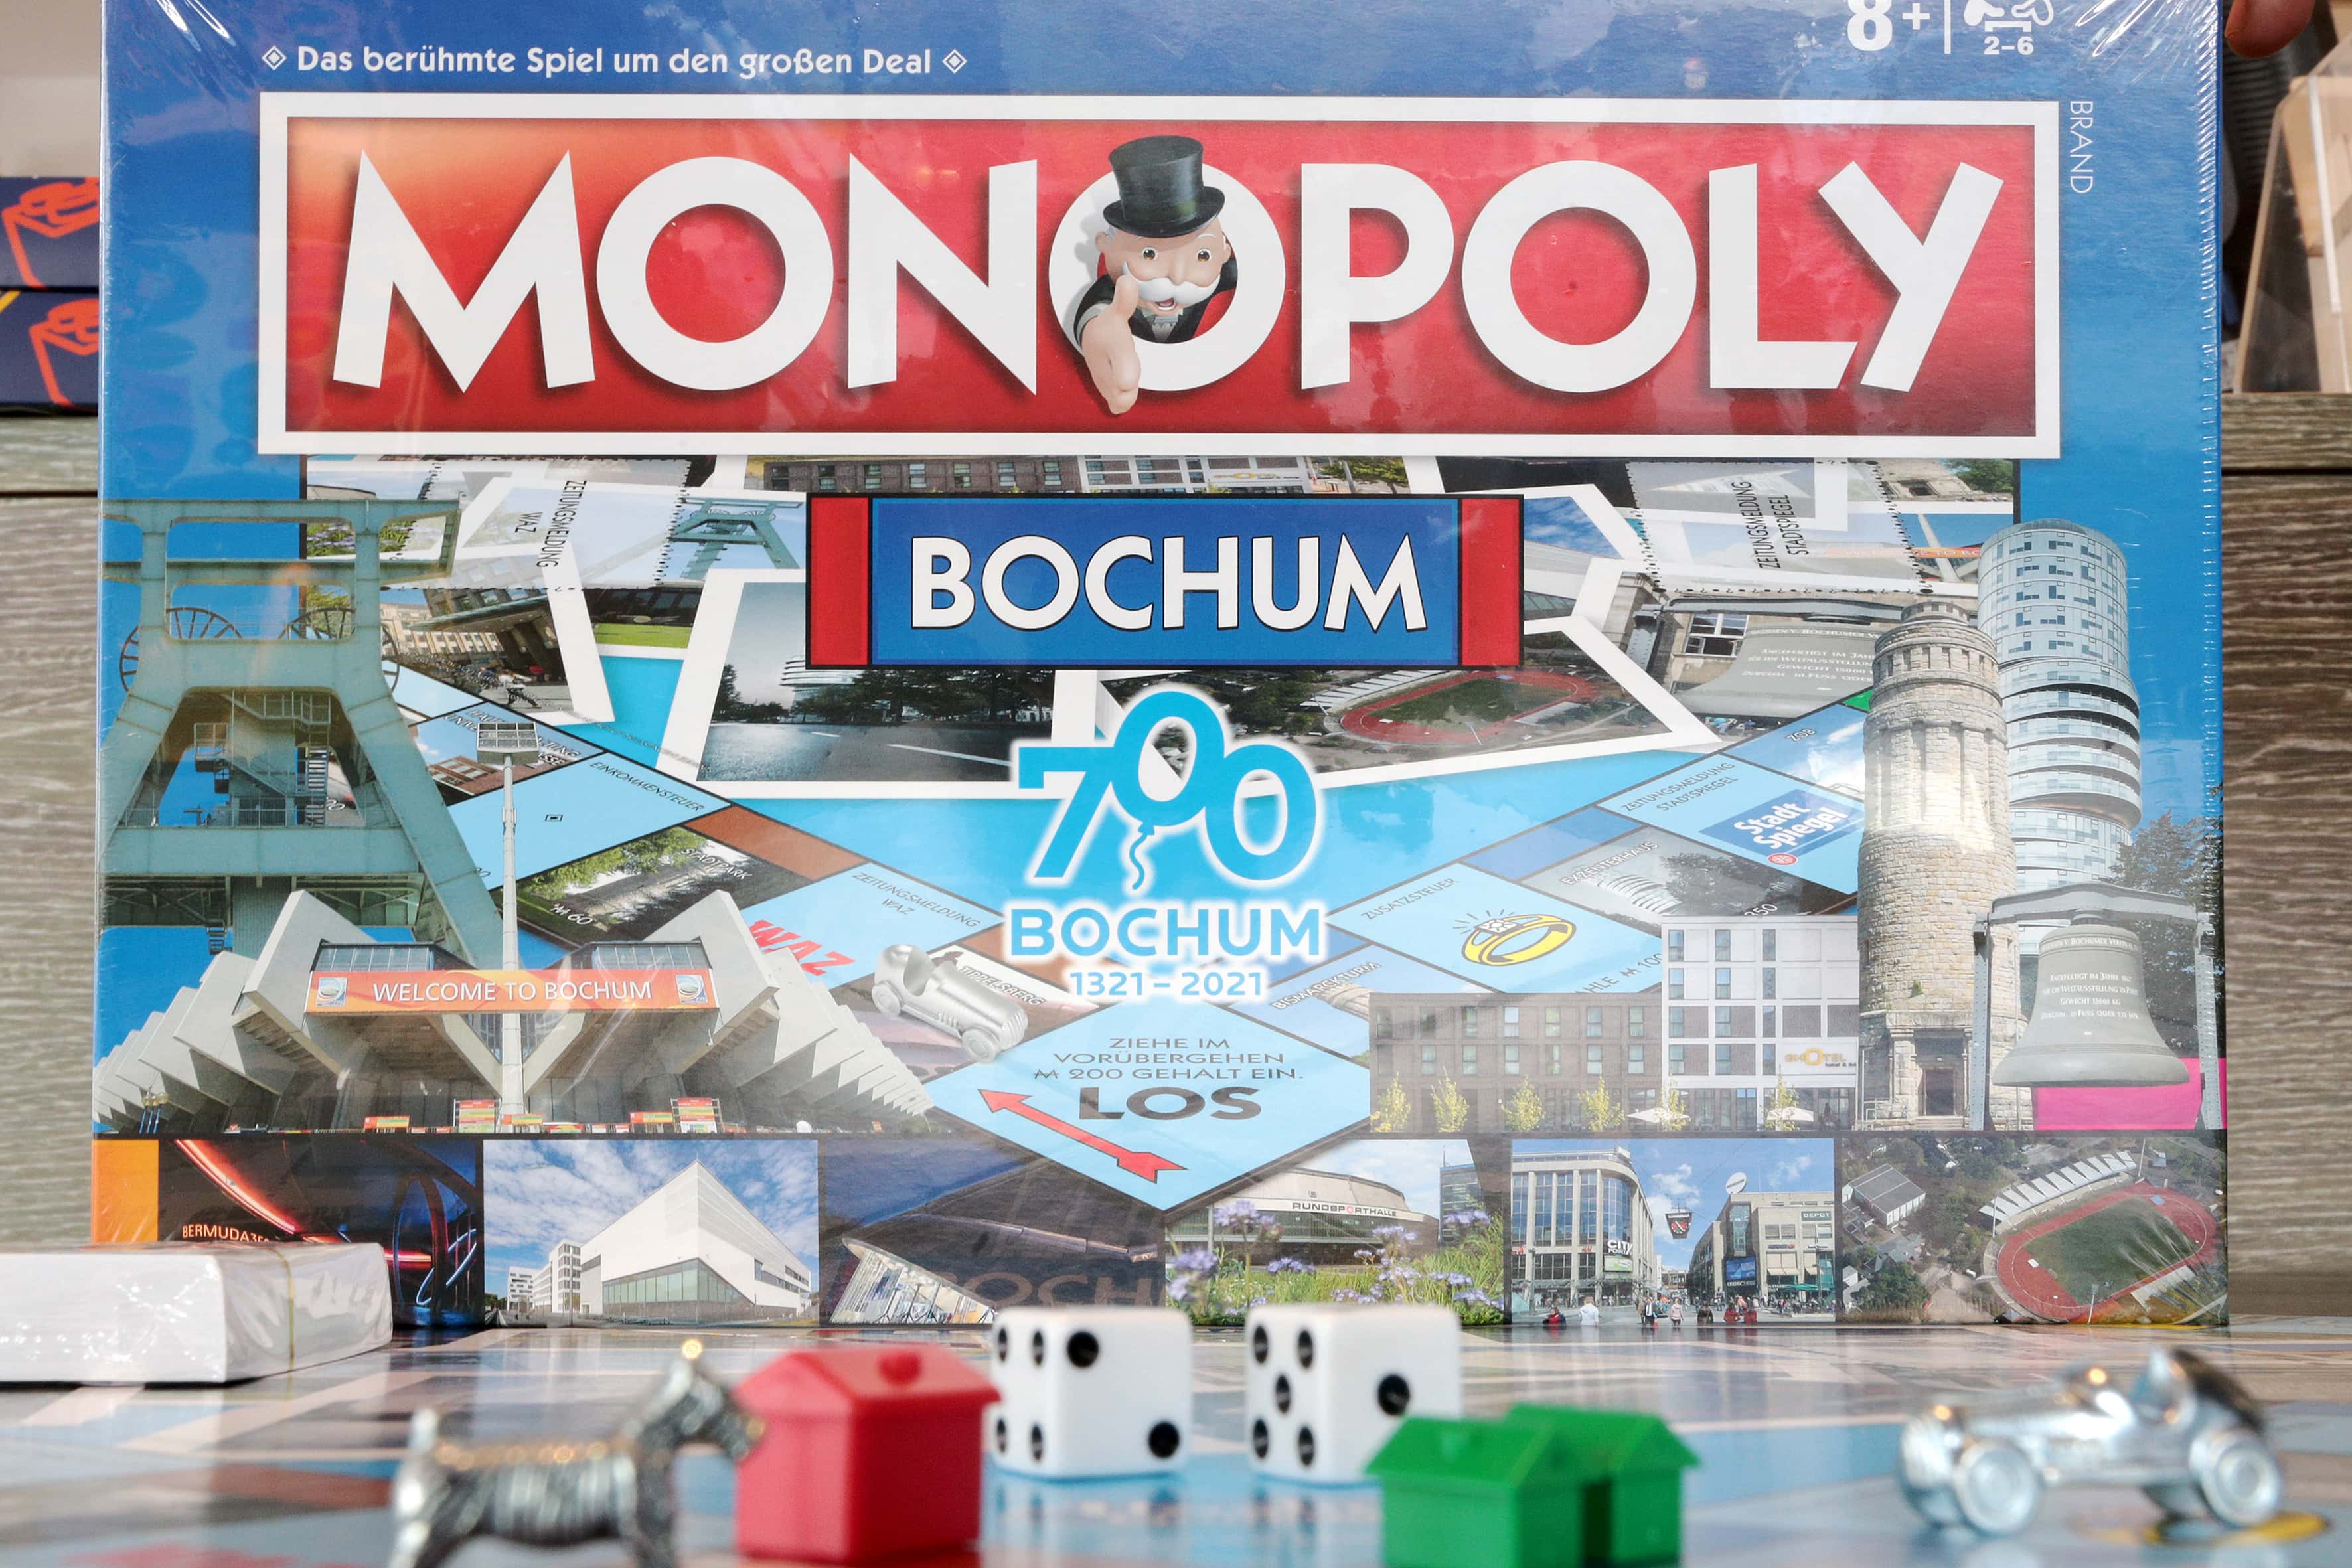 Monopoly Bochum: 700 Jahre Bochum 1321-2021